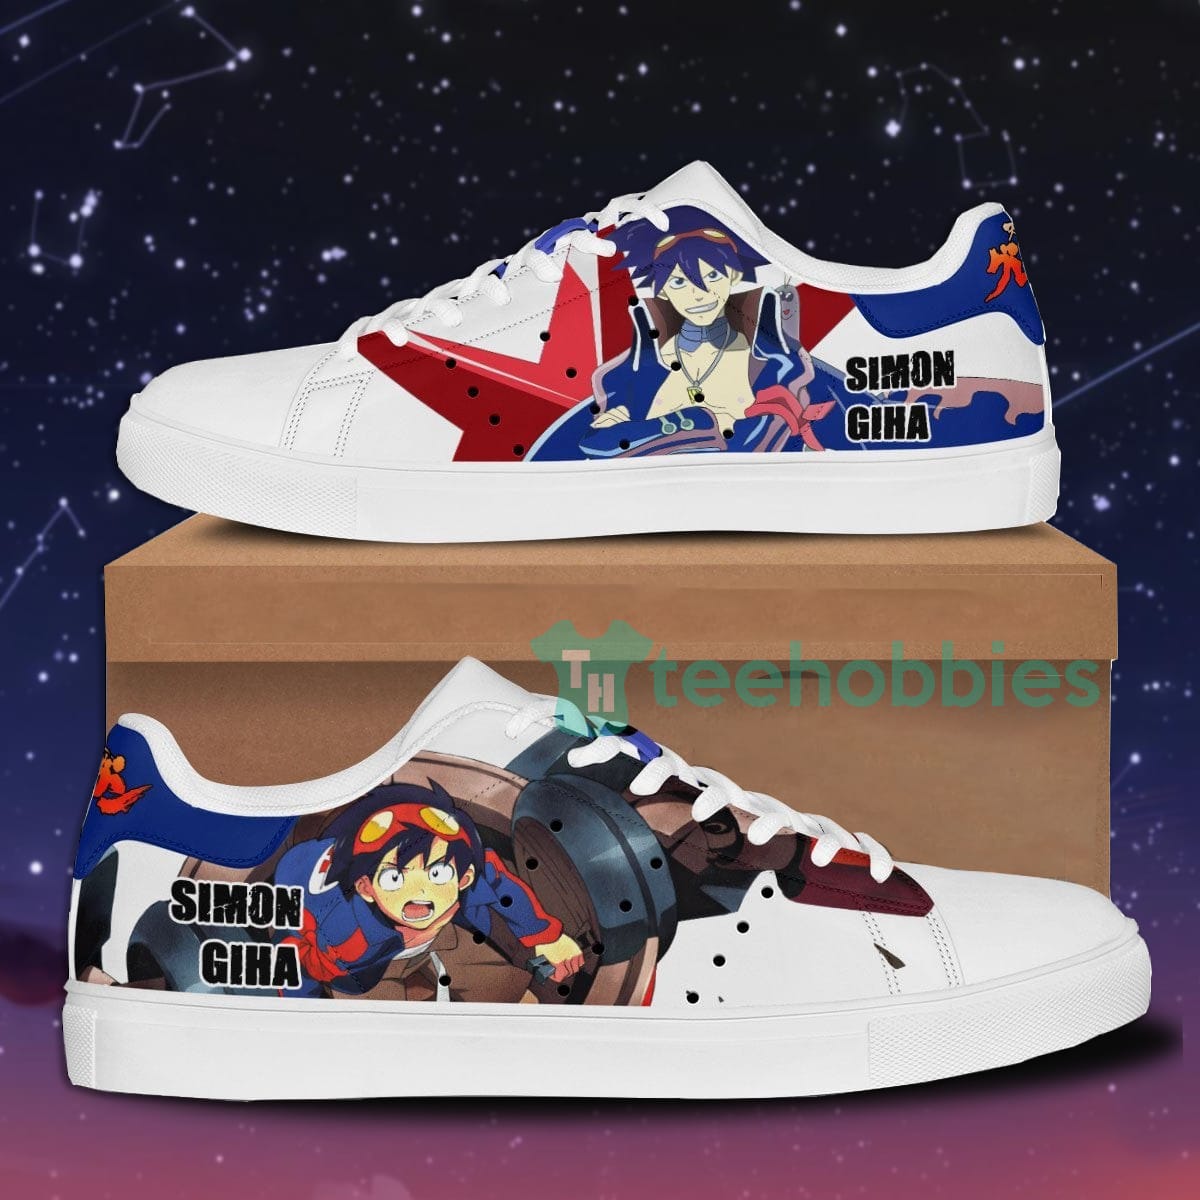 Simon the Digger Custom Gurren Lagann Anime Skate Shoes For Men And Women Product photo 1